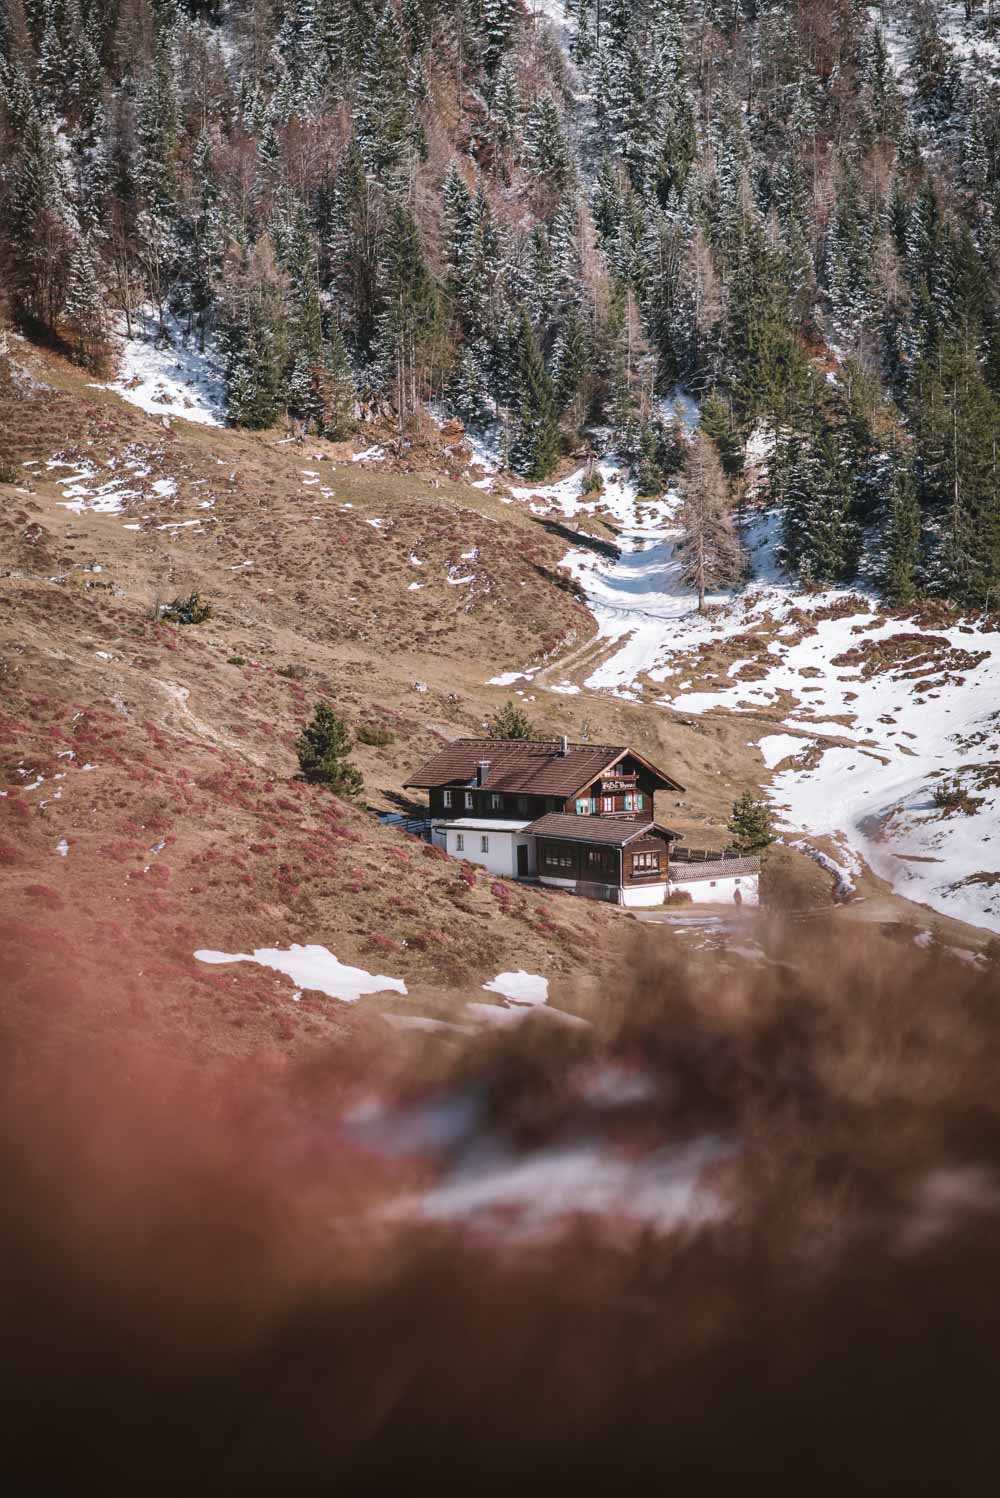 Schneerosenwanderung am Wilden Kaiser in Tirol, Rundwanderung vom Hintersteiner See zur Walleralm und Aussichtsberg Kreuzbichl | Wandern im Frühling - beste Zeit für die Schneerosen-Blüte: März |  #wilderkaiser #kitzbüheleralpen #mountainhideaways